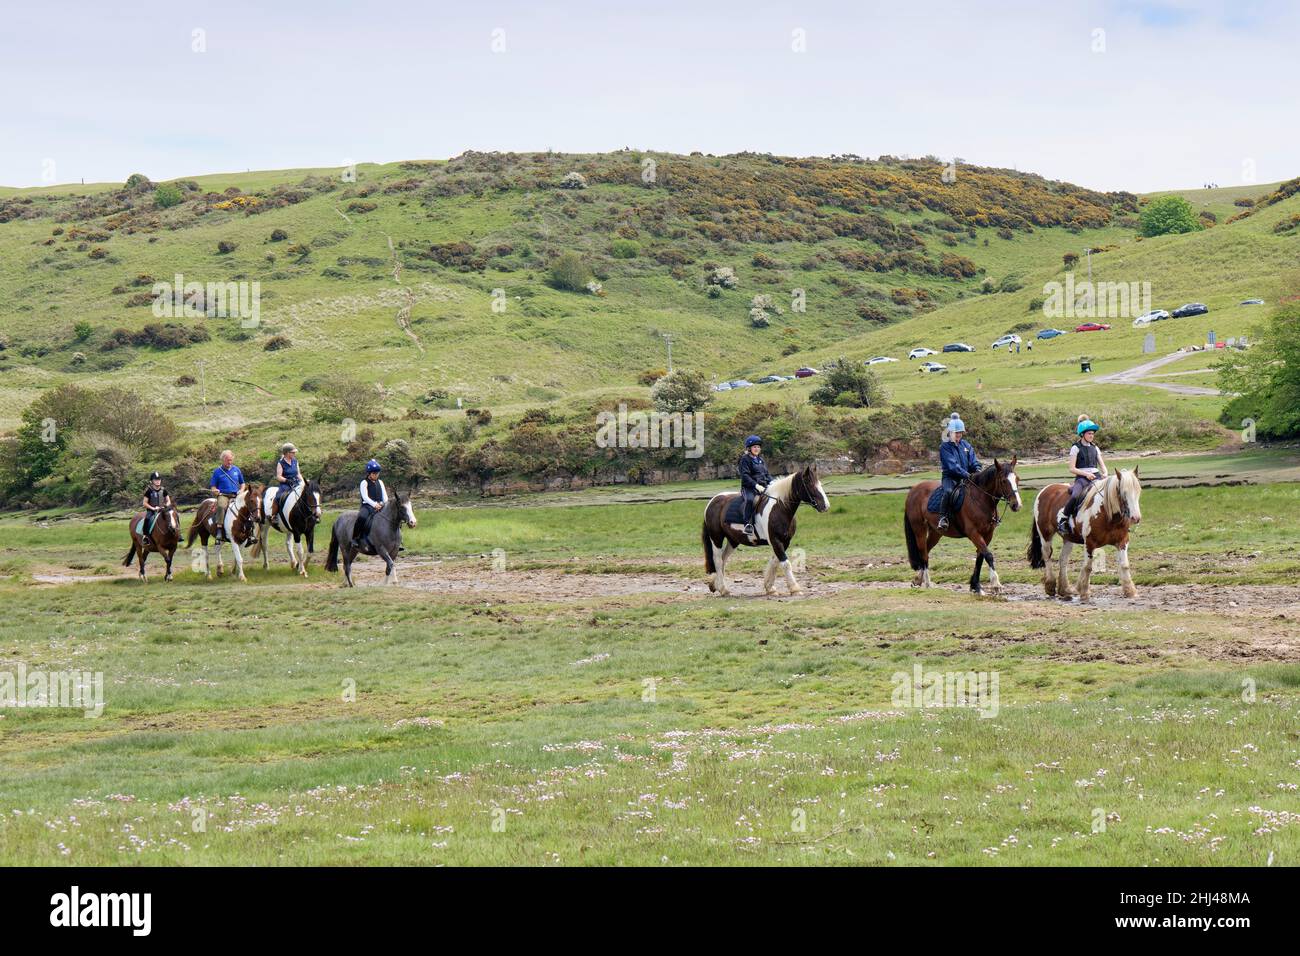 Cavalieri di cavalli su un sentiero paludoso accanto al fiume Ogmore sul lato meridionale del Merthyr Mawr Warren NNR, Glamorgan, Galles, Regno Unito, maggio. Foto Stock